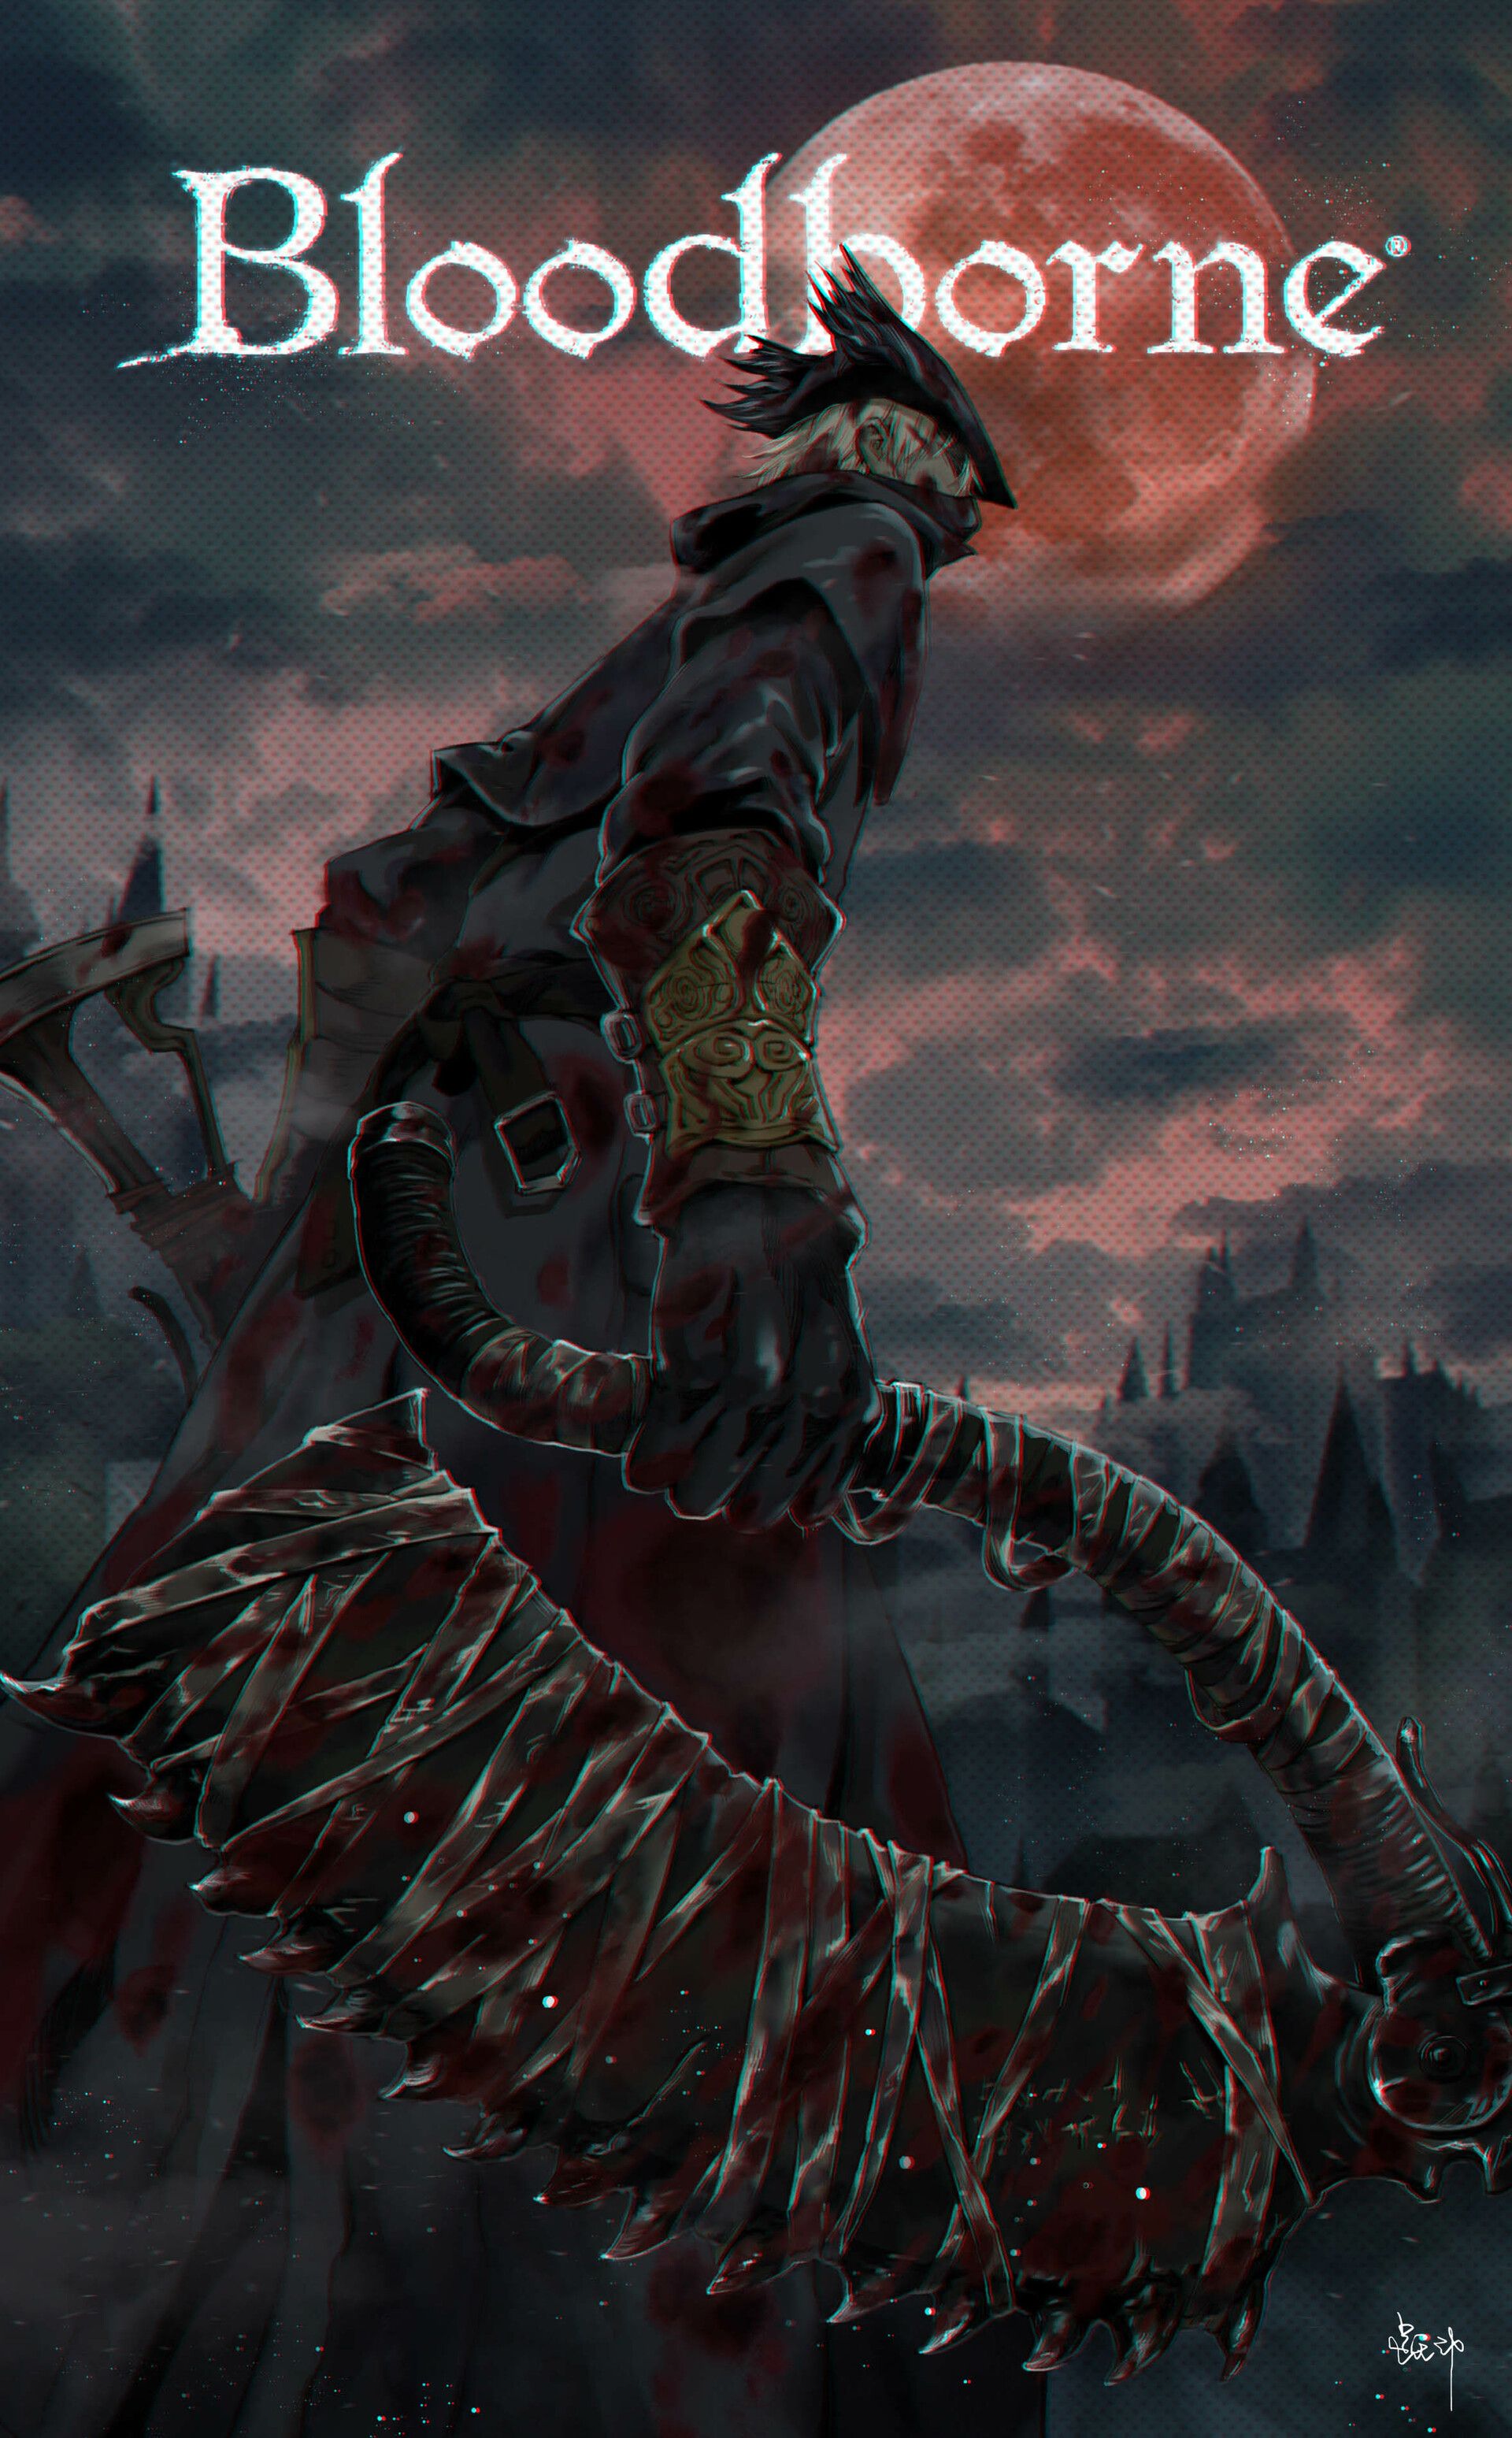 Bloodborne для PS4